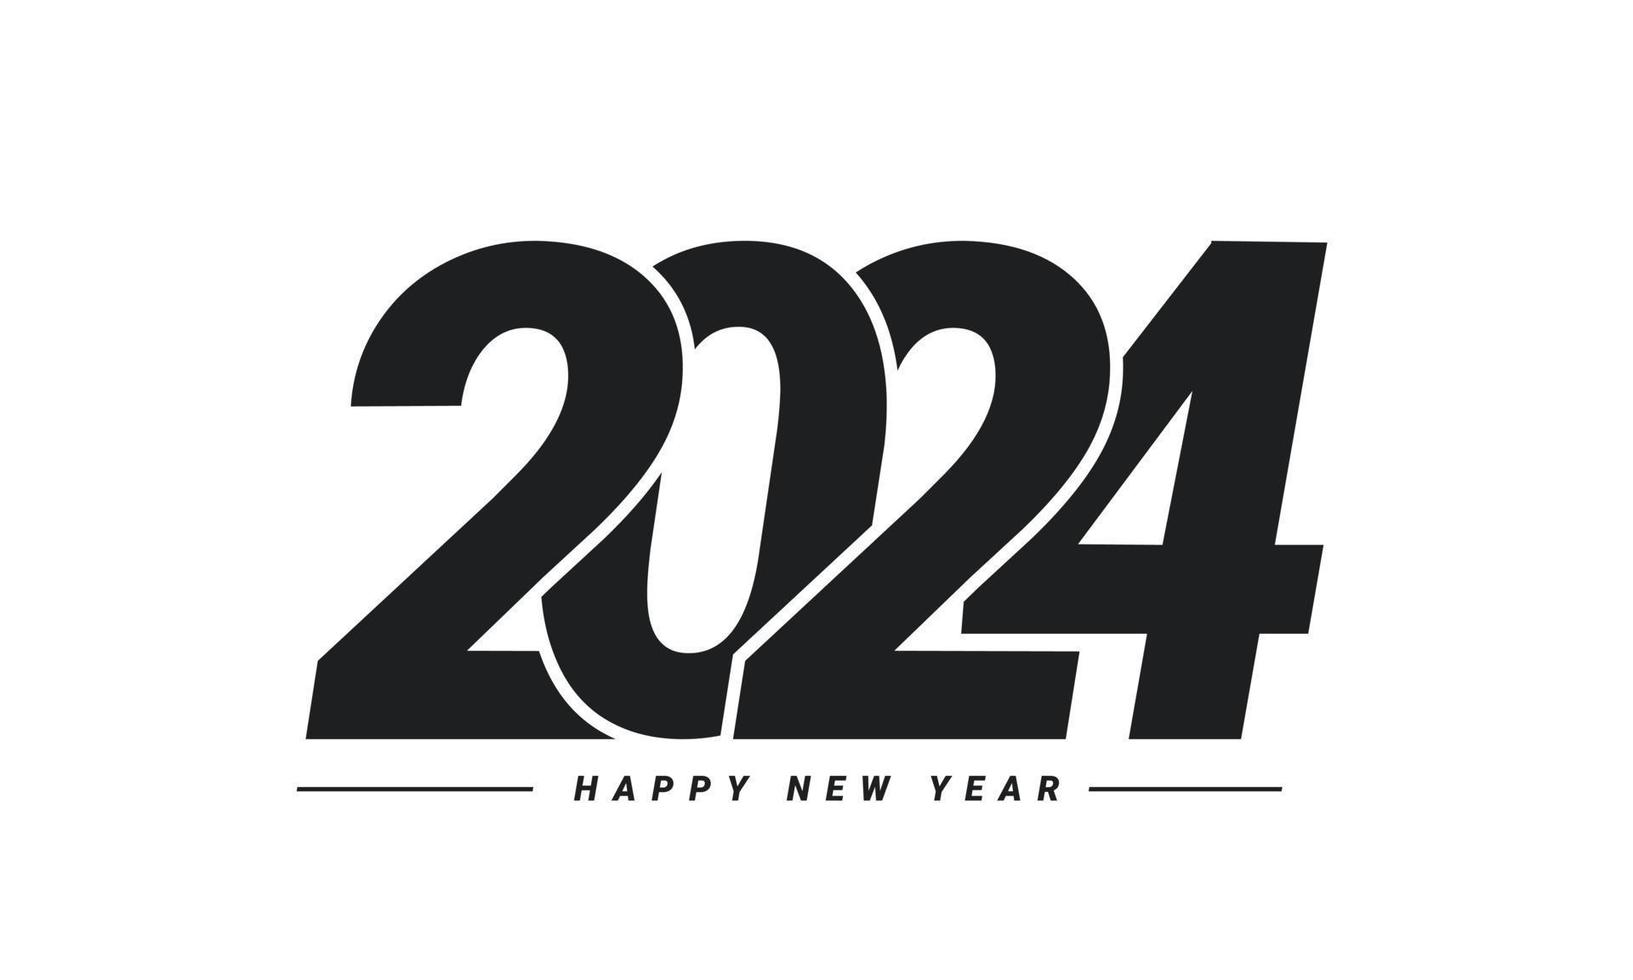 Diseño de fondo de feliz año nuevo 2024. vector